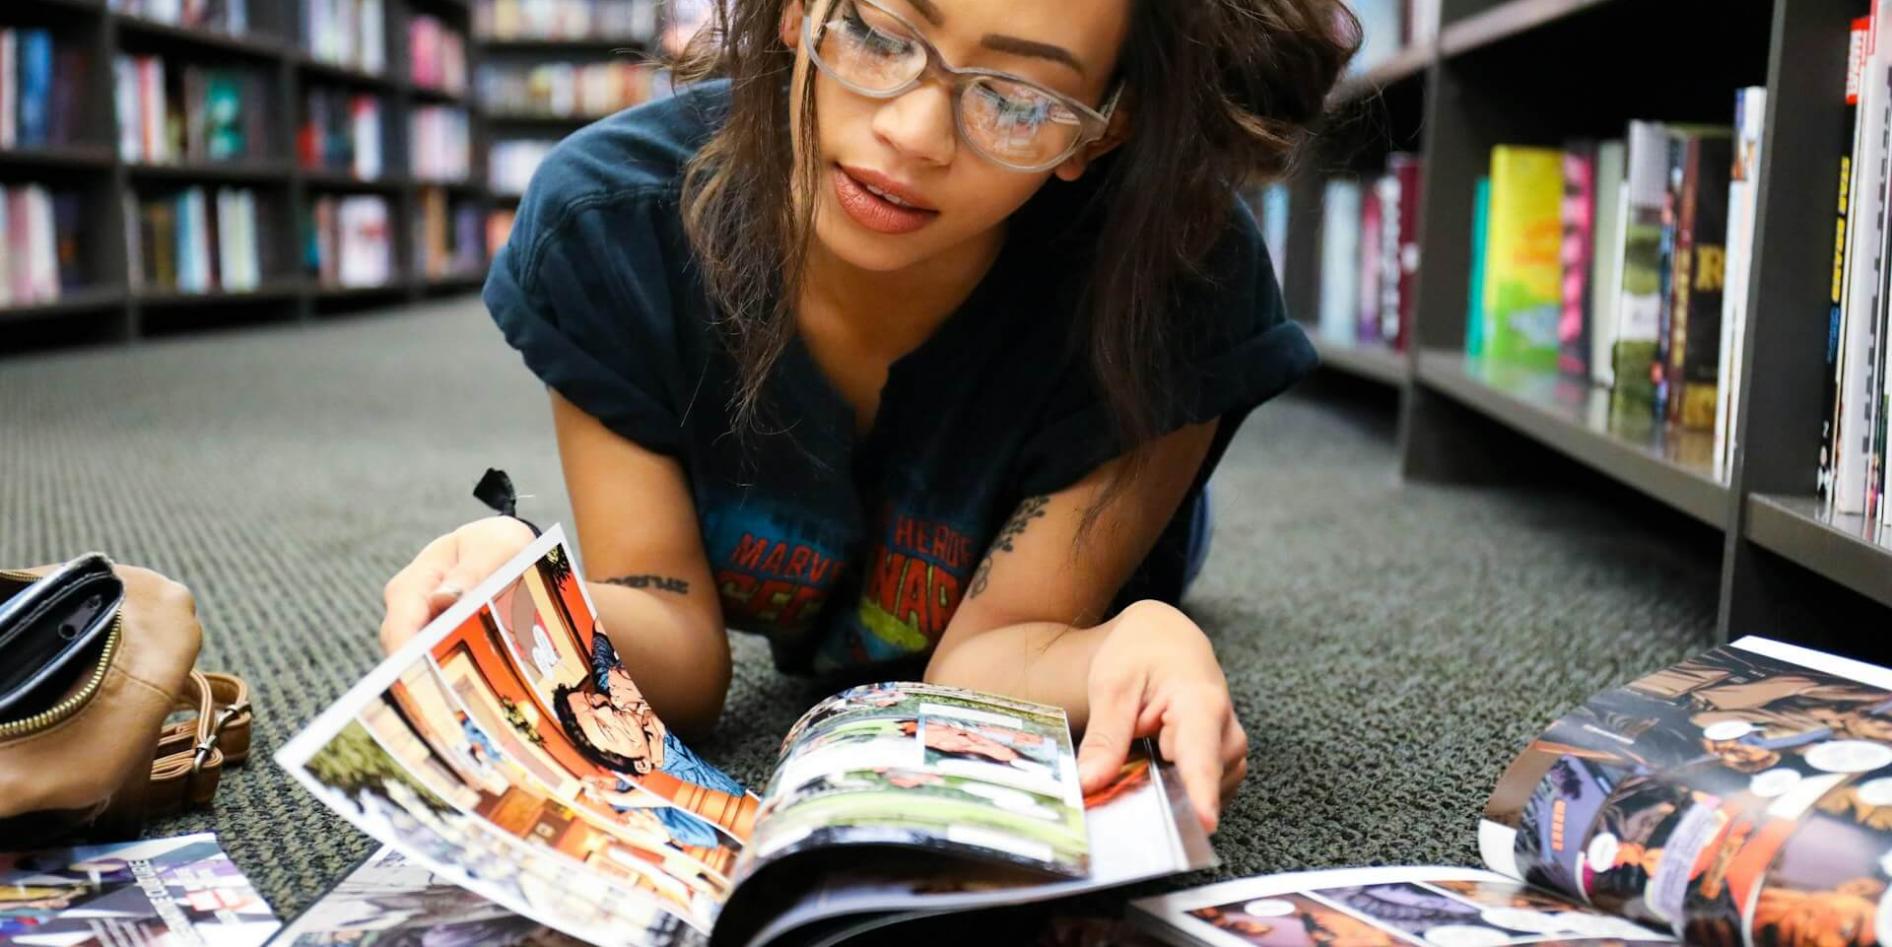 Eine junge Frau liegt auf dem Boden und liest Bücher